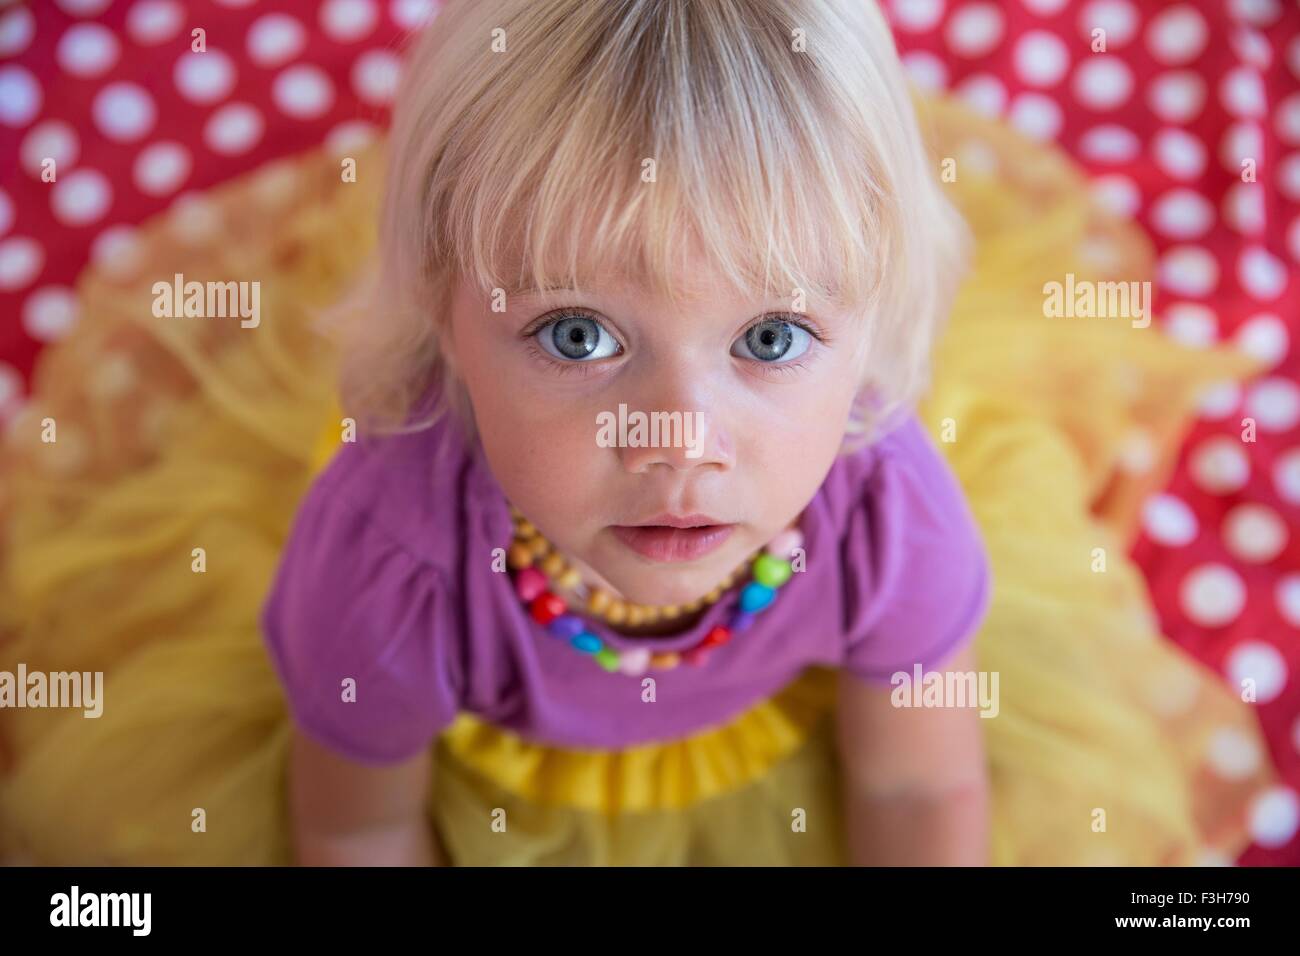 Obenliegende Porträt des weiblichen Kleinkind mit blauen Augen und blonden Haaren Stockfoto